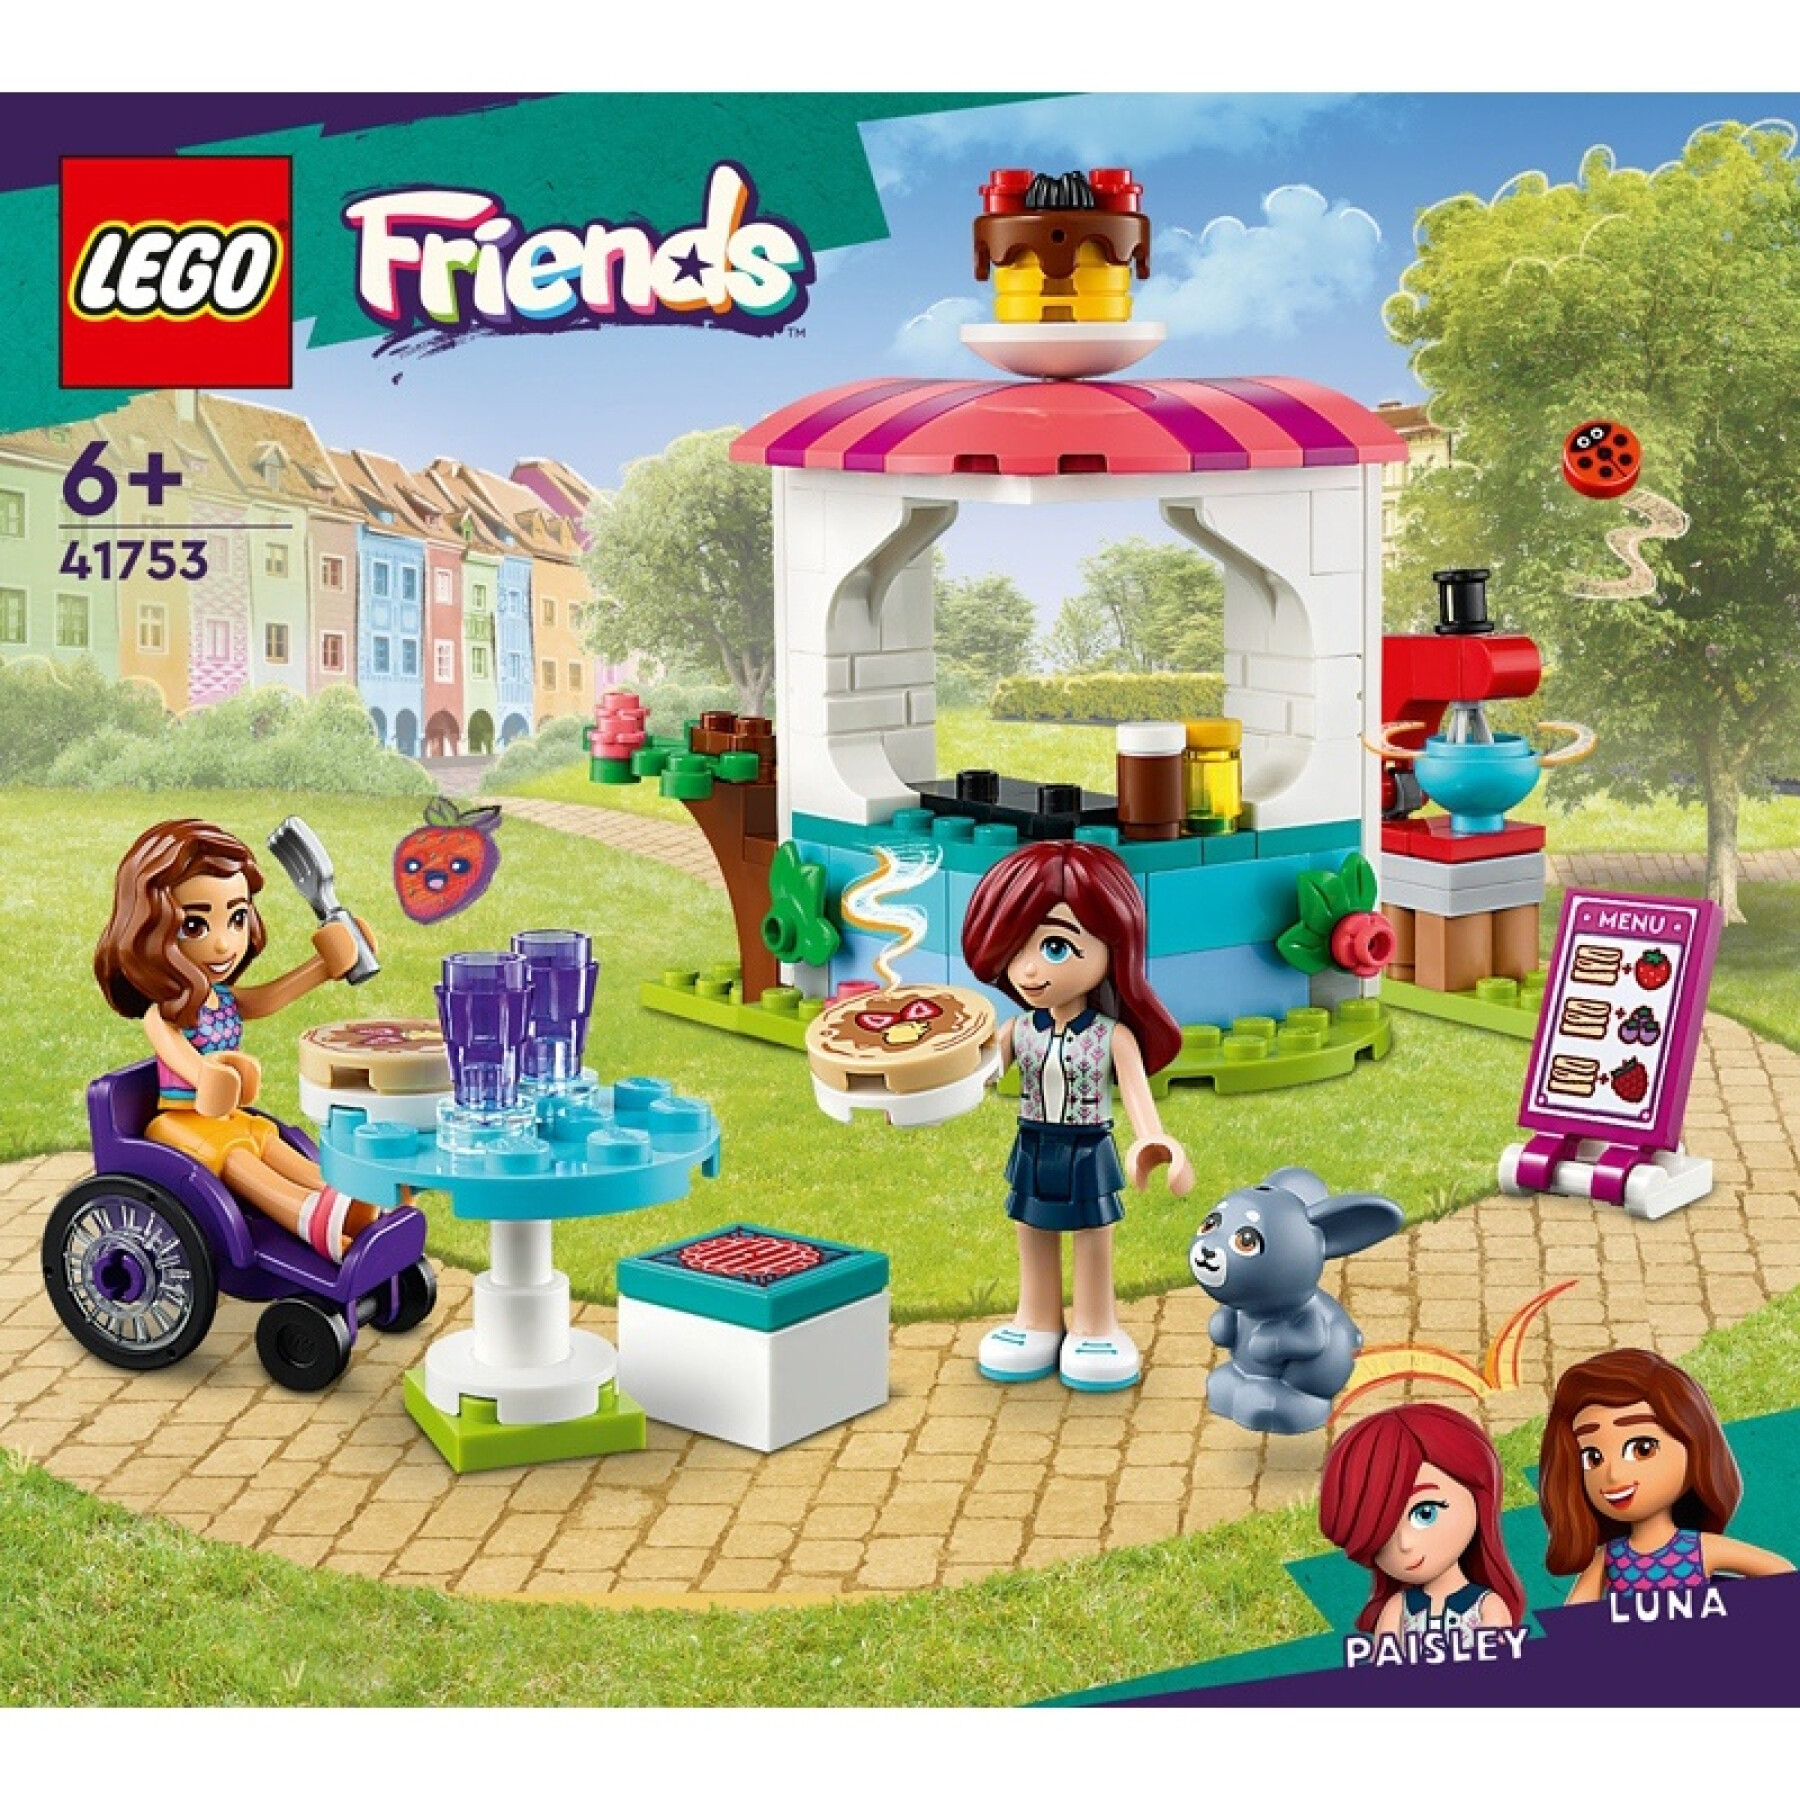 La creperie bouwpakketten Lego Friends